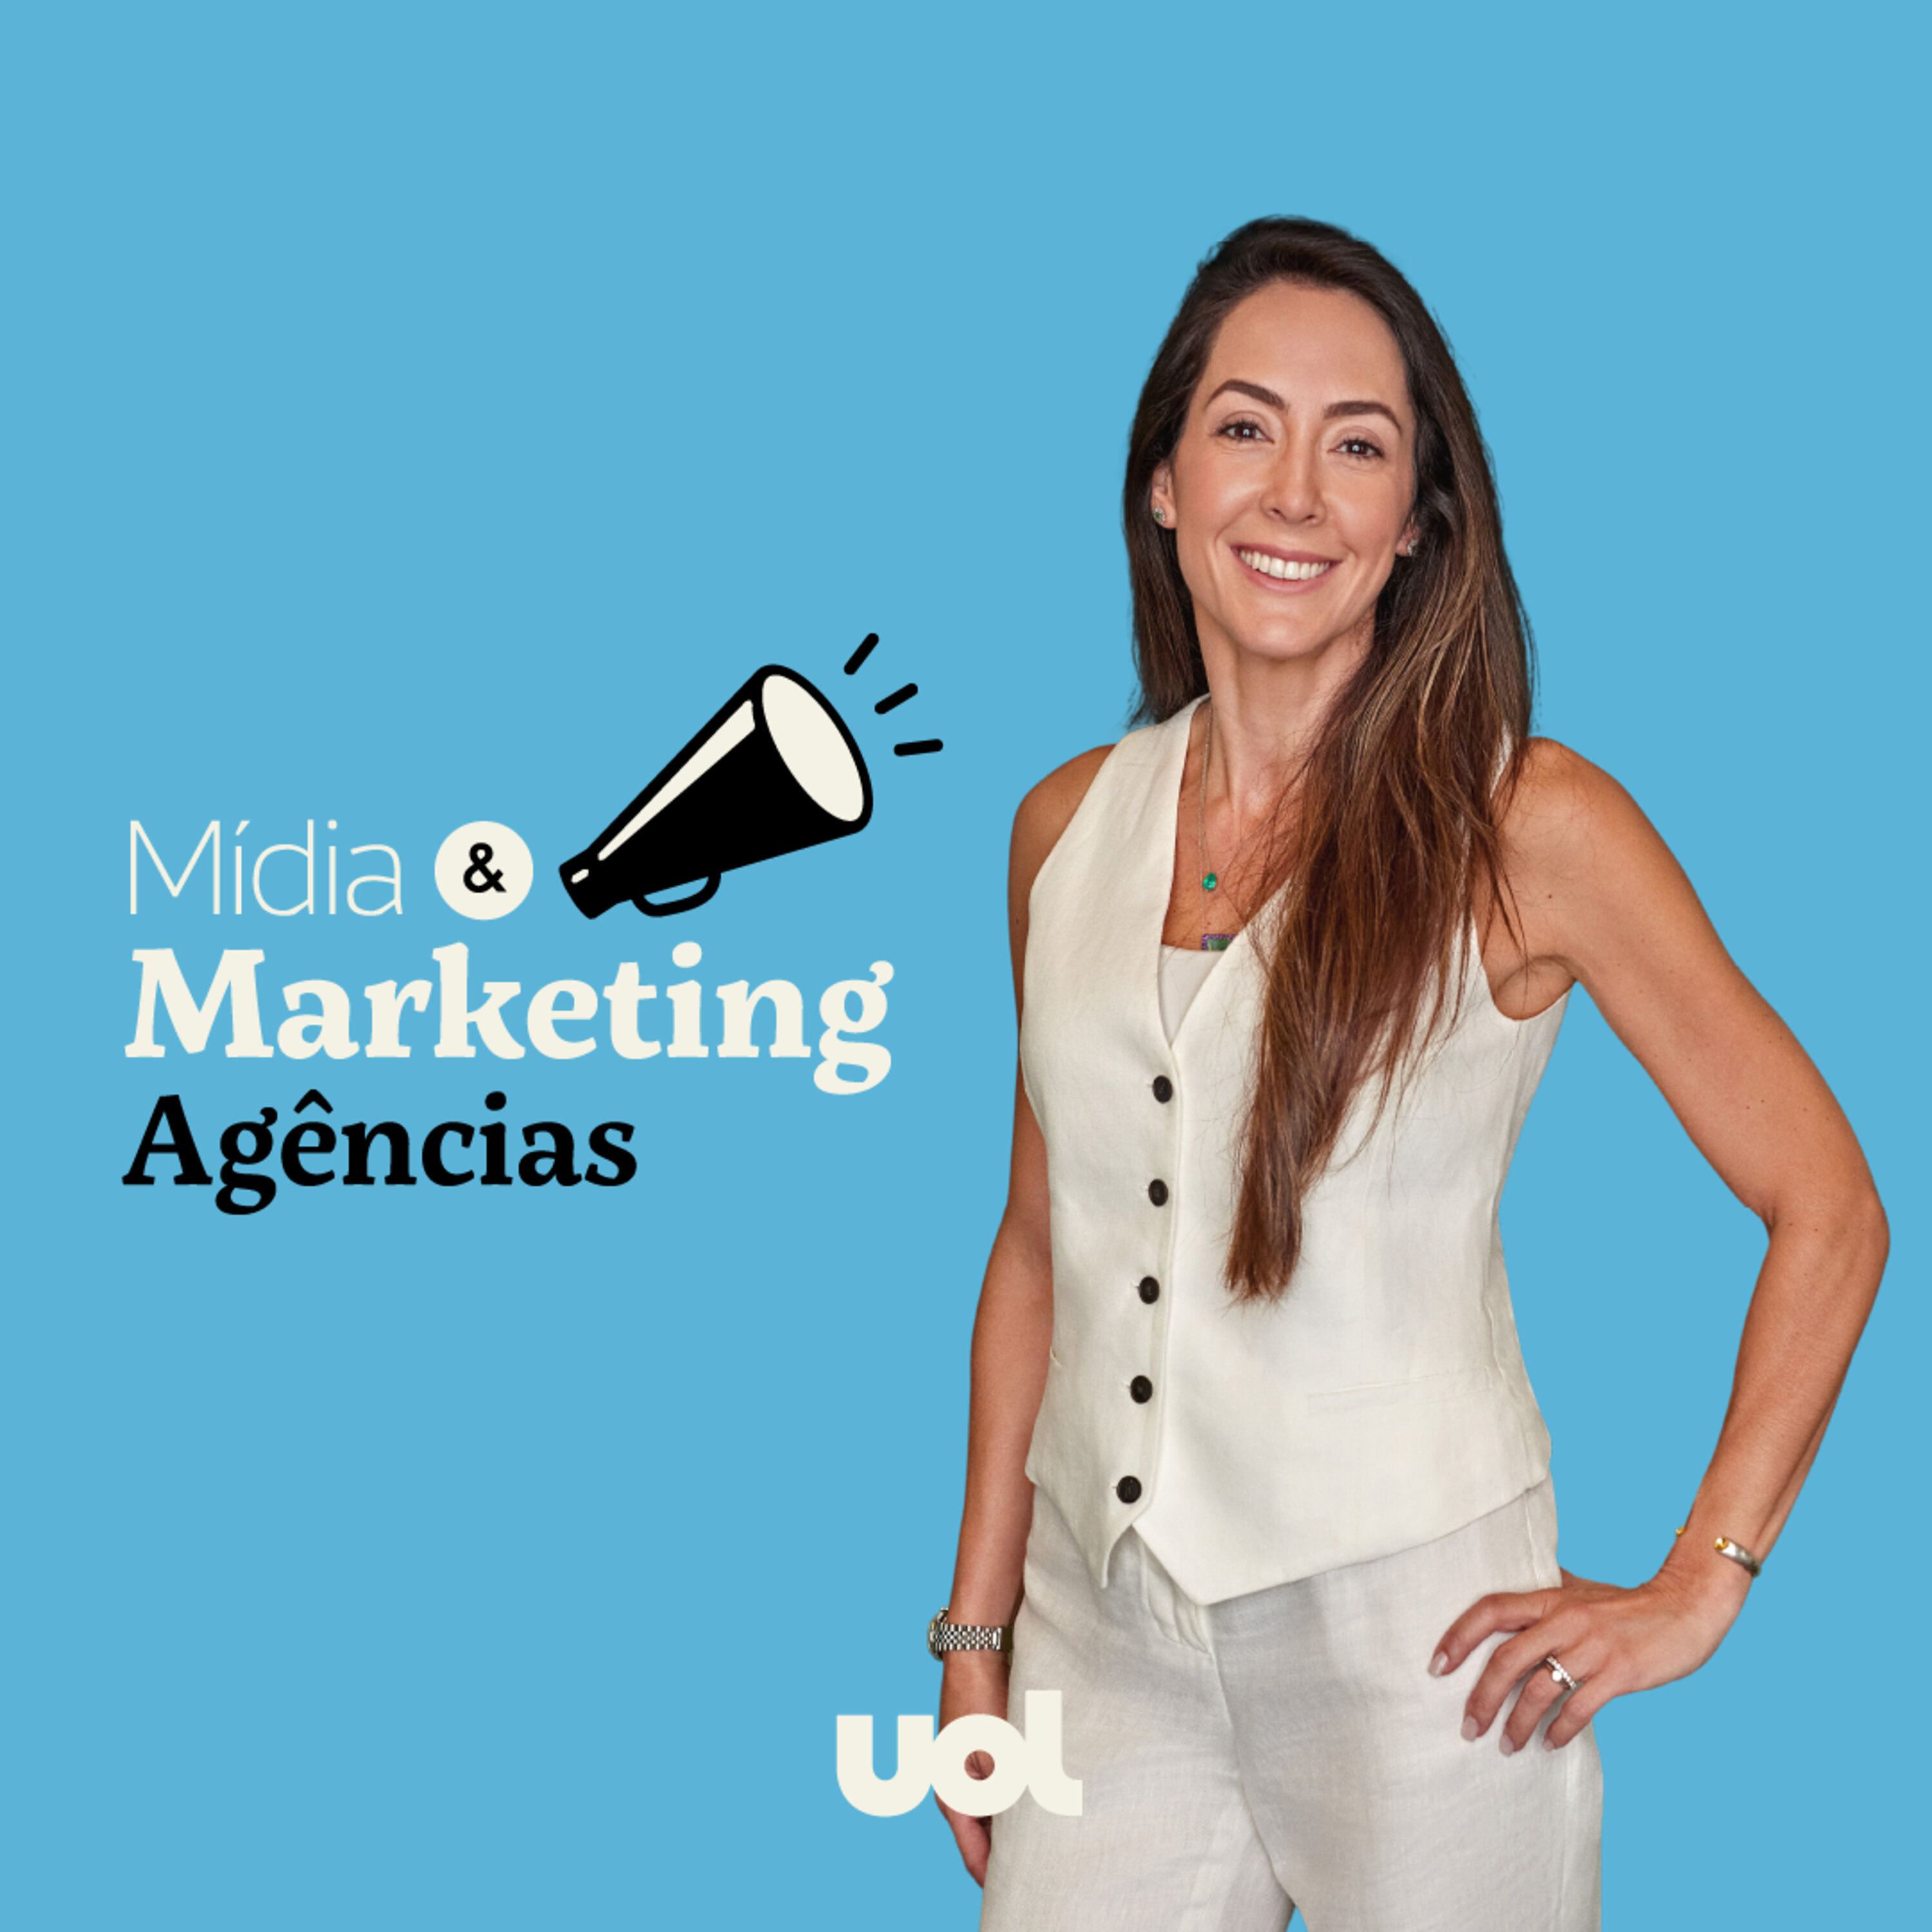 A 'nova' publicidade, pelo menos para as agências: com Karina Ribeiro, CEO da VML